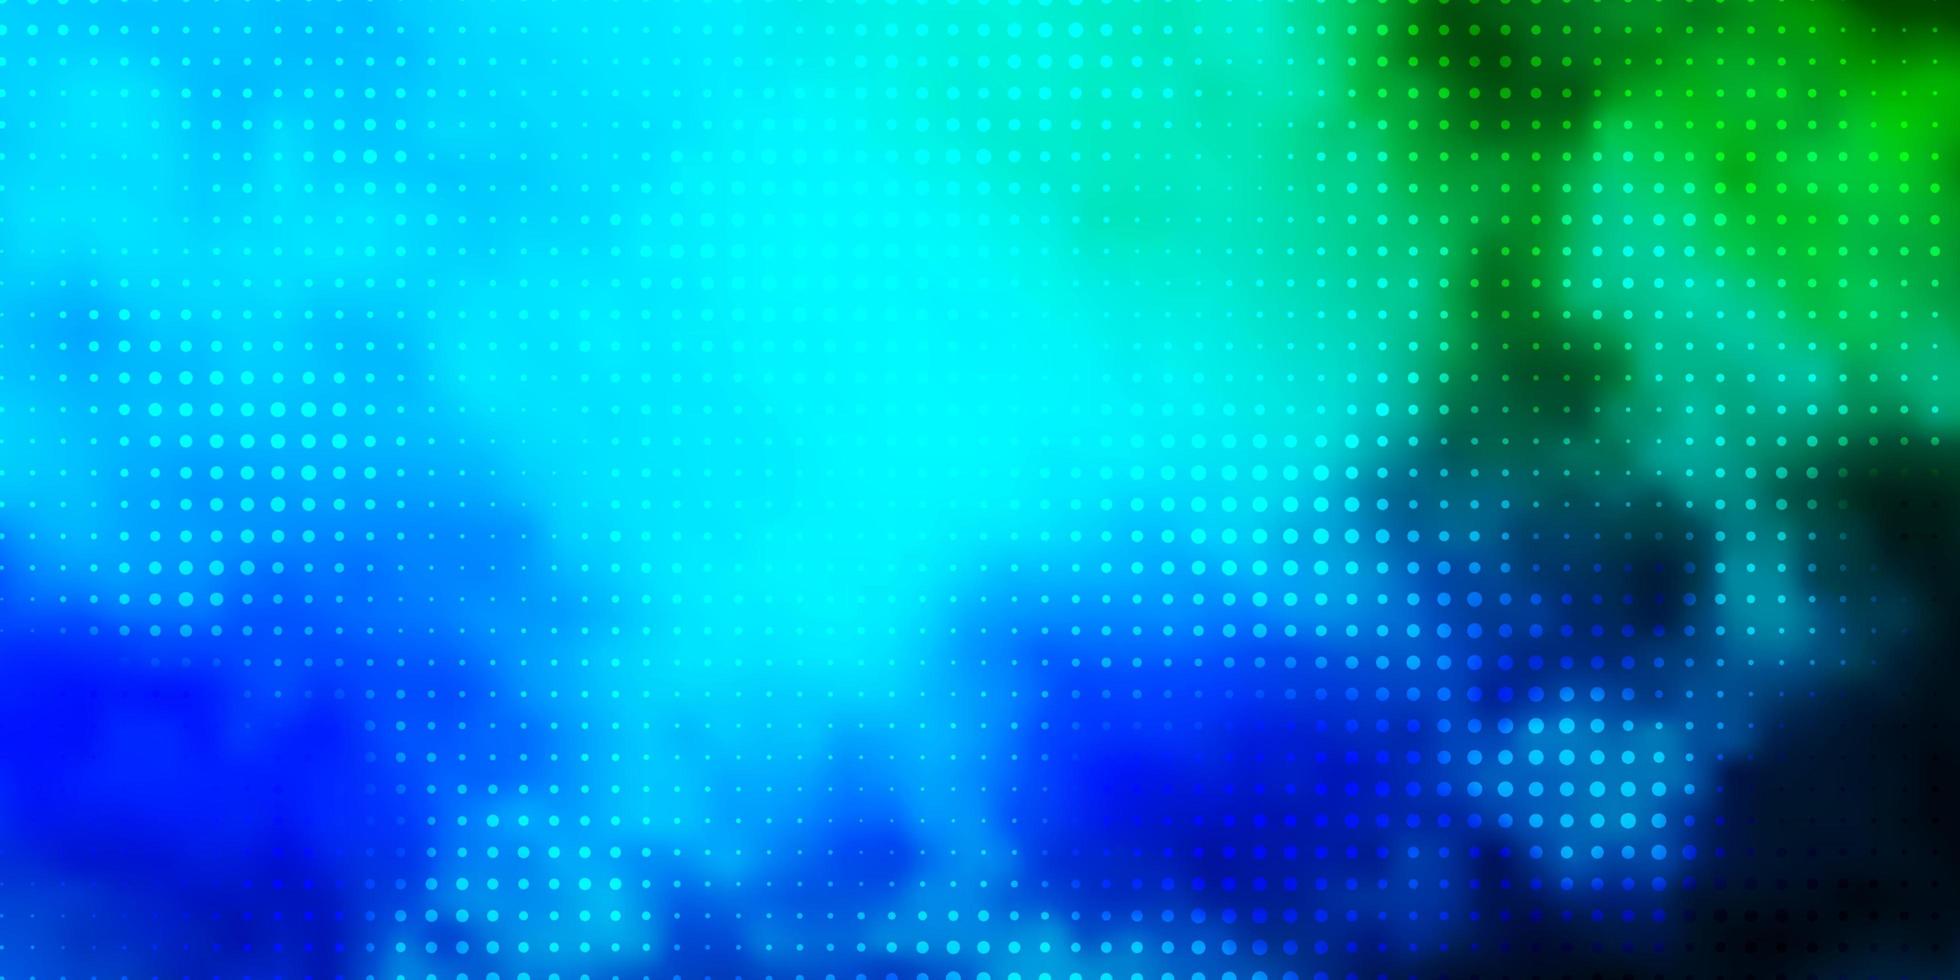 lichtblauwe, groene vectorachtergrond met stippen. abstracte kleurrijke schijven op eenvoudige gradiëntachtergrond. patroon voor behang, gordijnen. vector